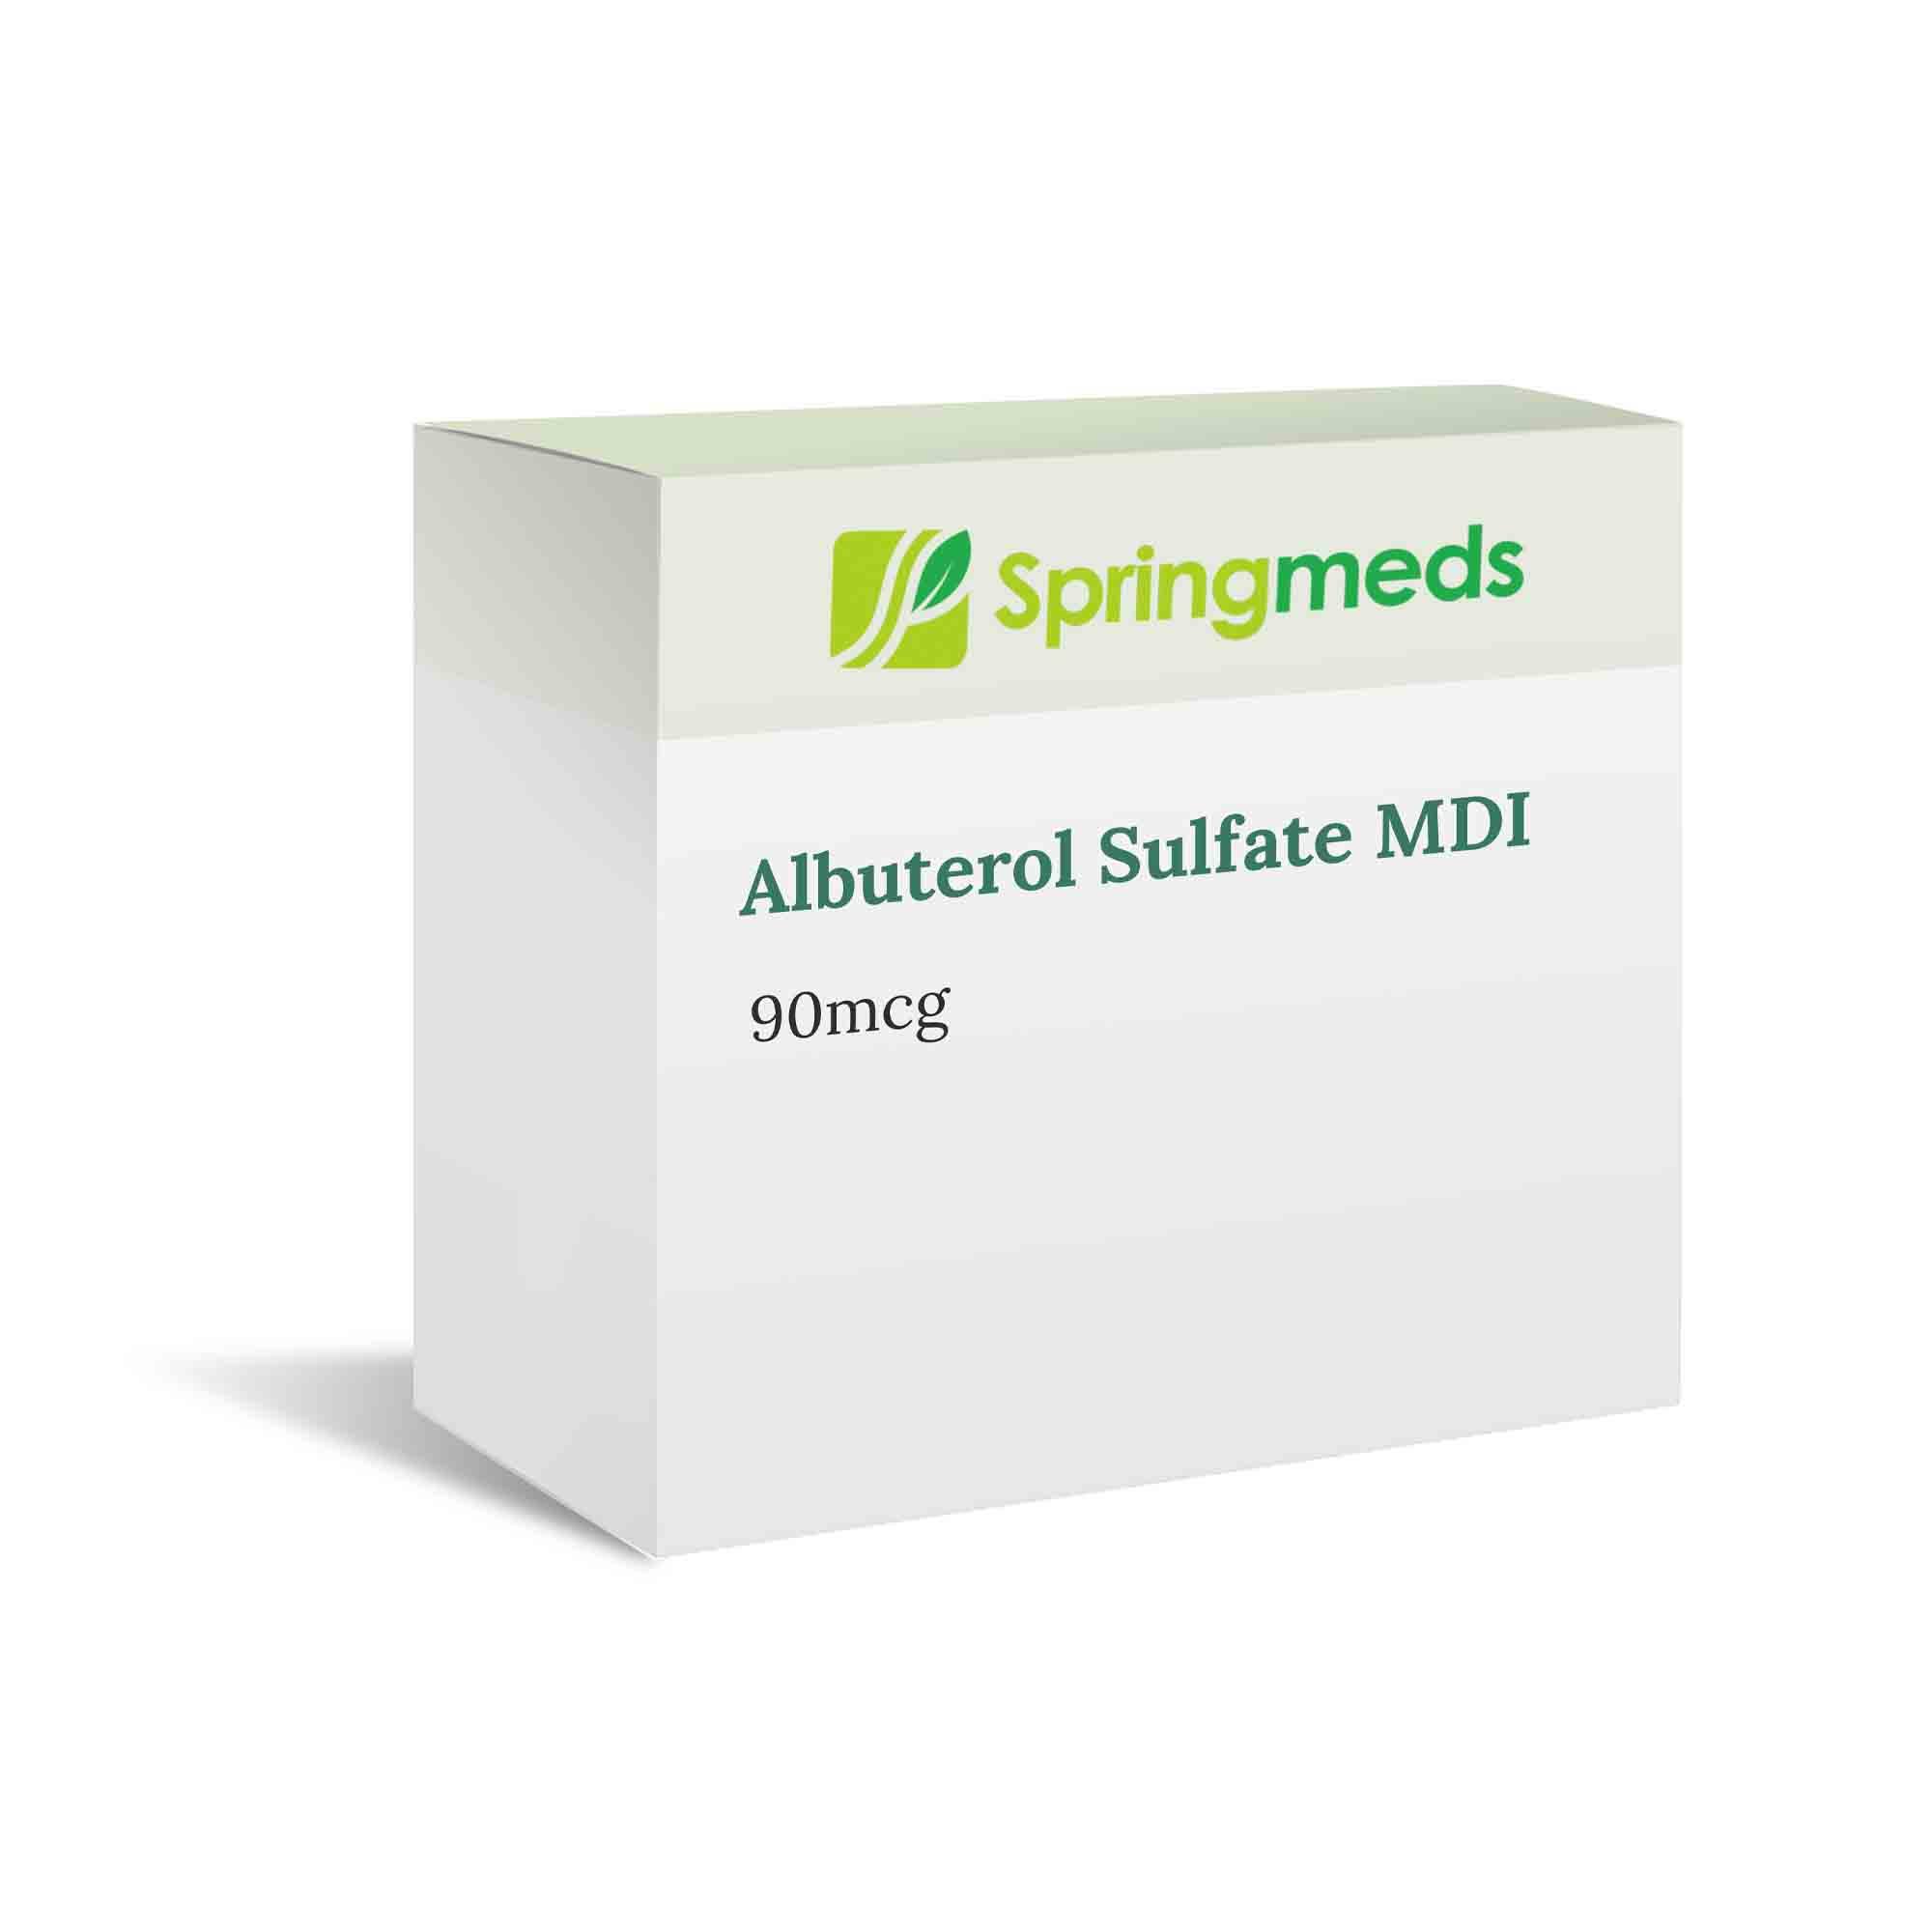 Albuterol Sulfate HFA